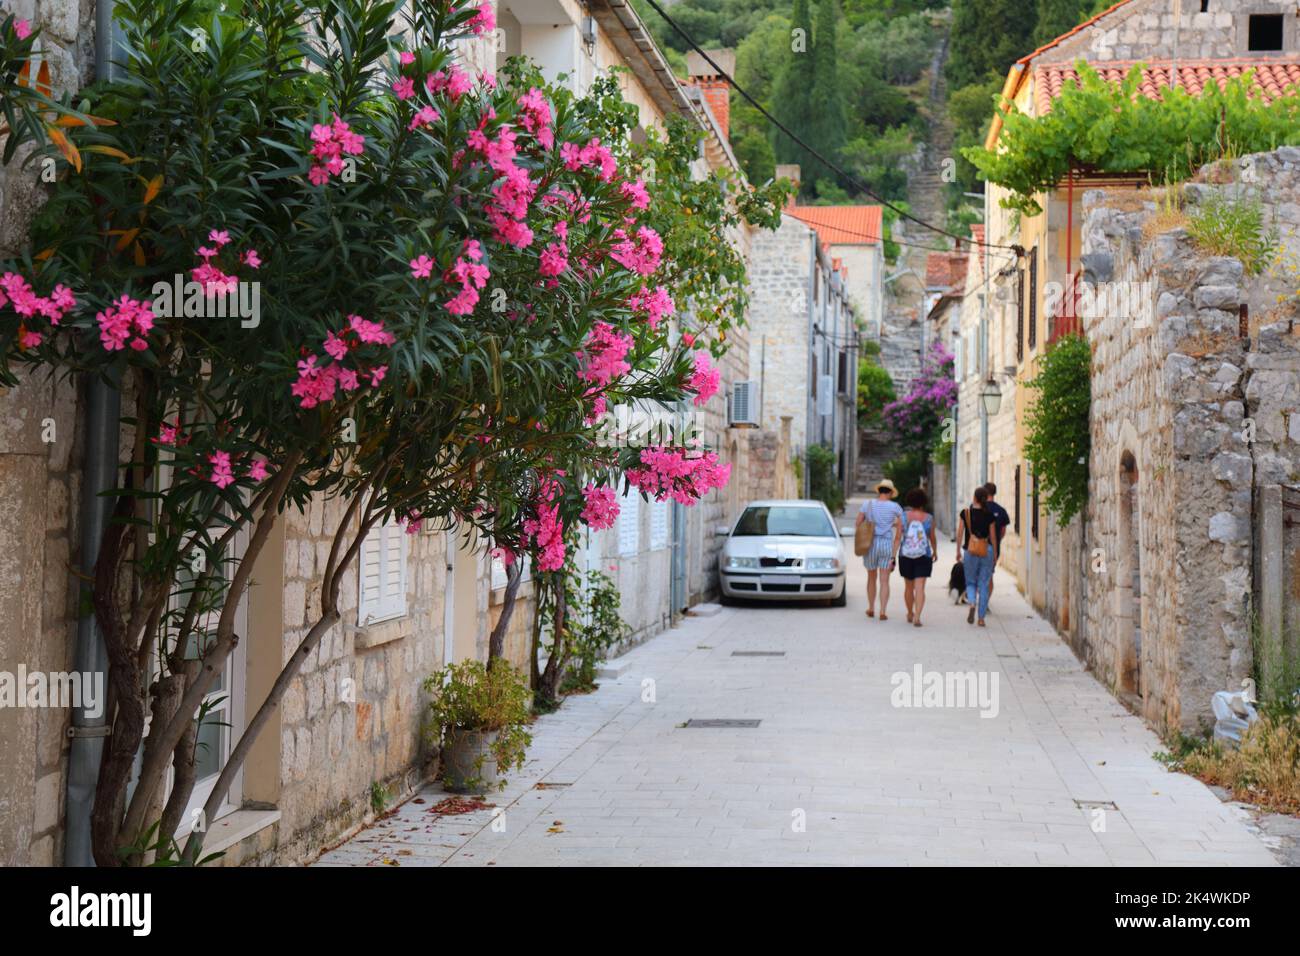 Ston, Croazia. Strade della città vecchia. Fuoco sui fiori dell'oleandro. Foto Stock